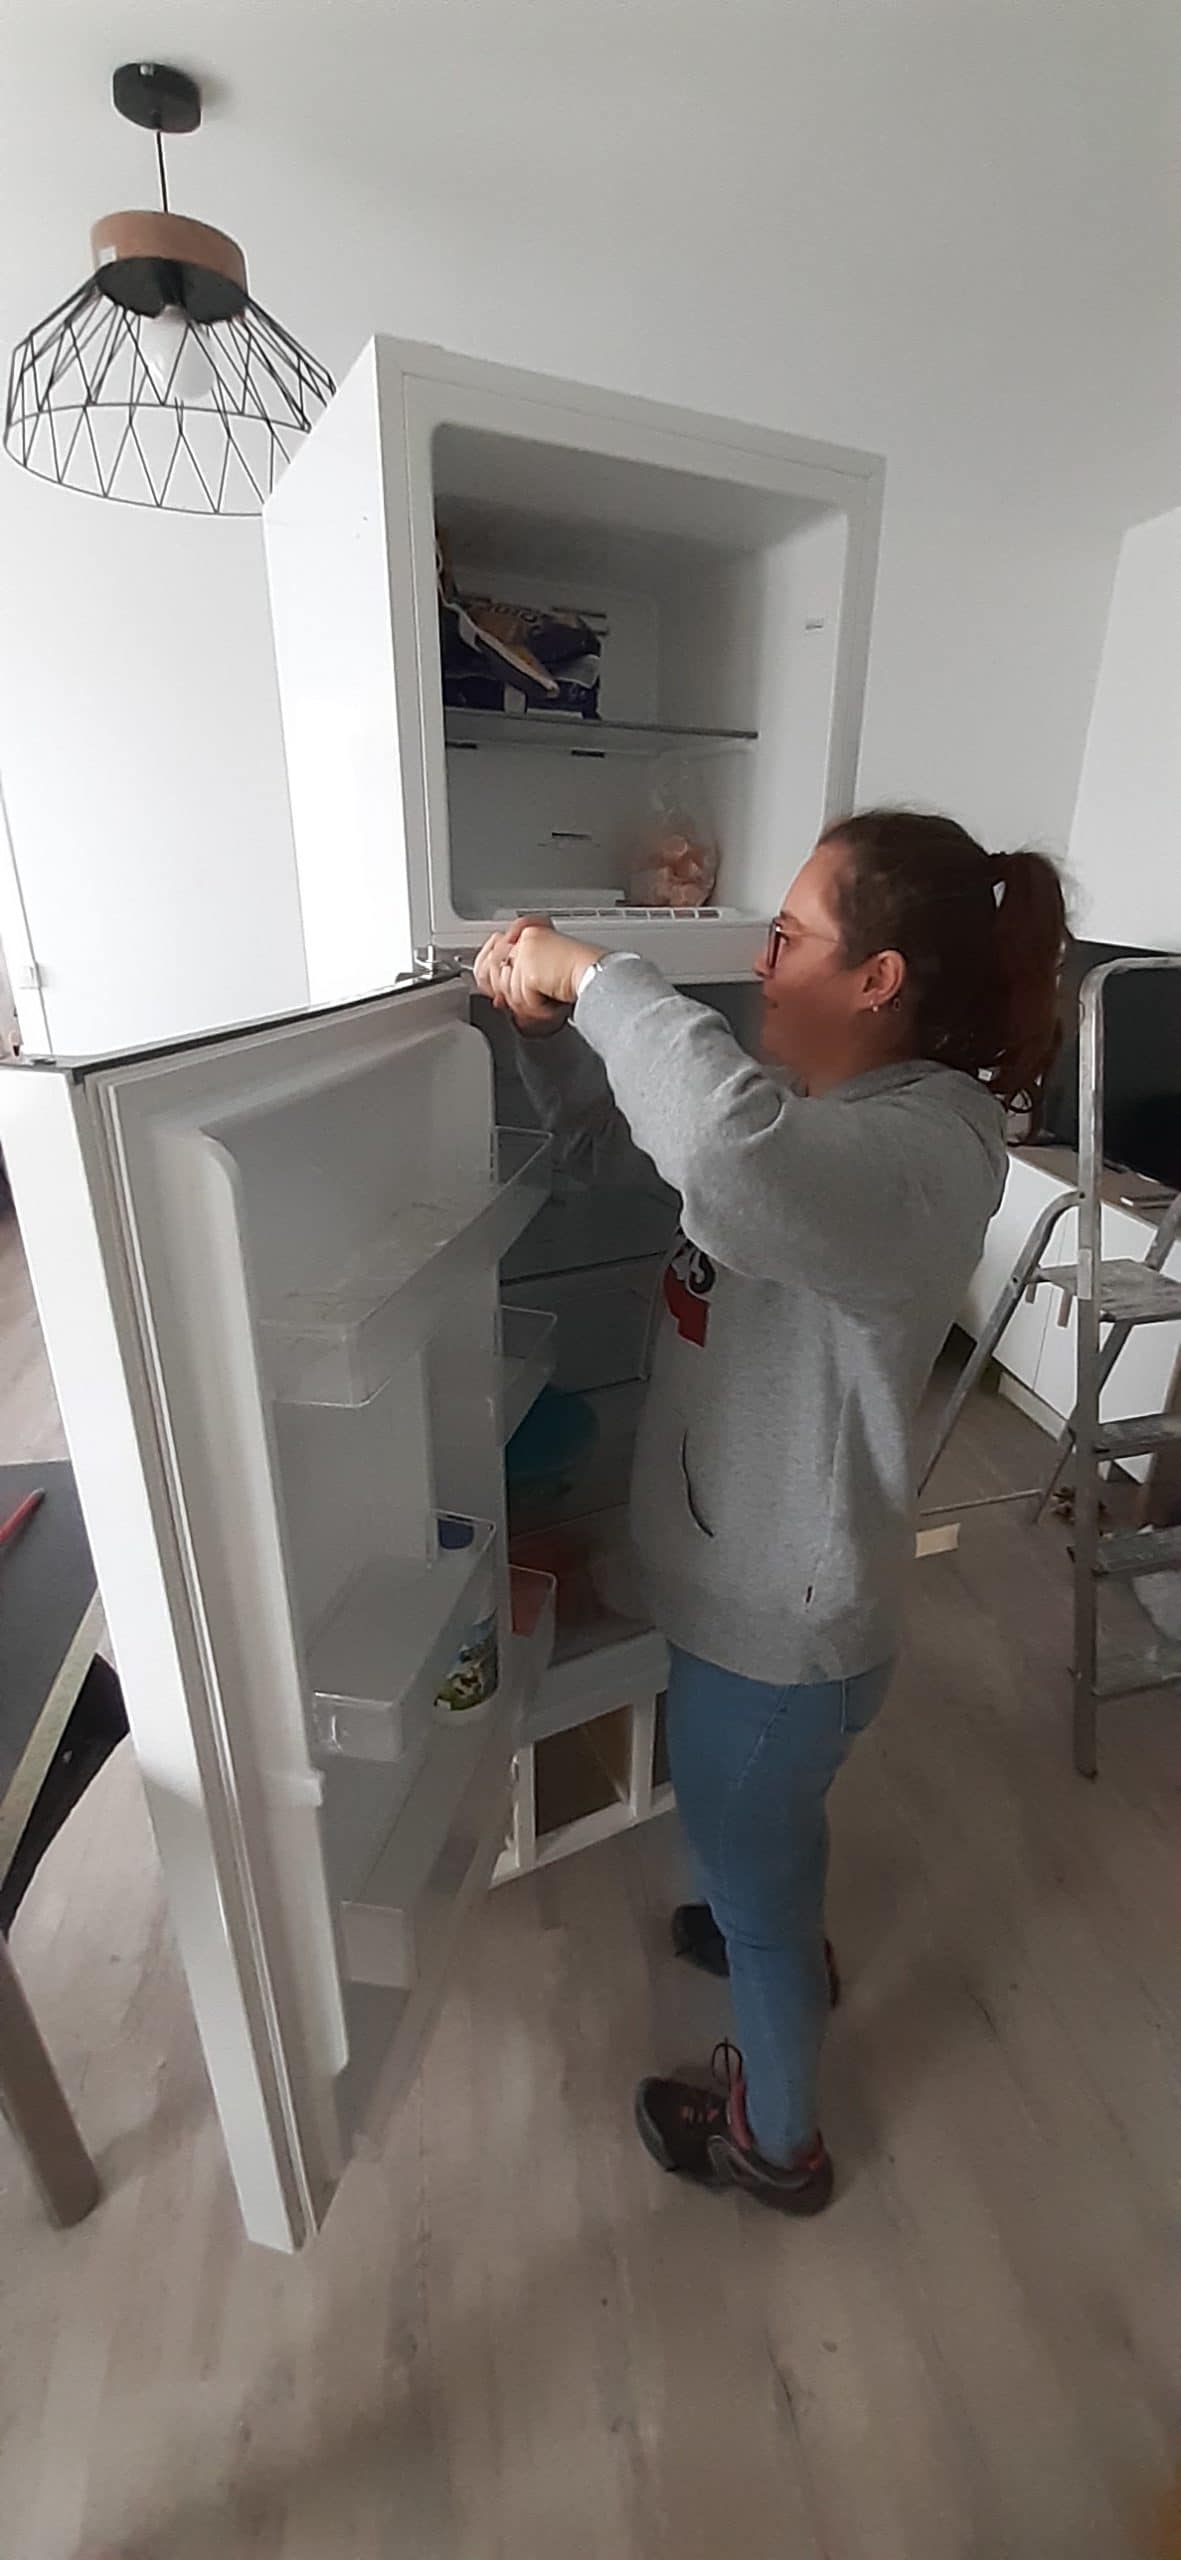 Ameublement : Changement de sens d'ouverture de portes de réfrigérateur à Rillieux la Pape
Pose de menuiseries intérieures et montage de meubles